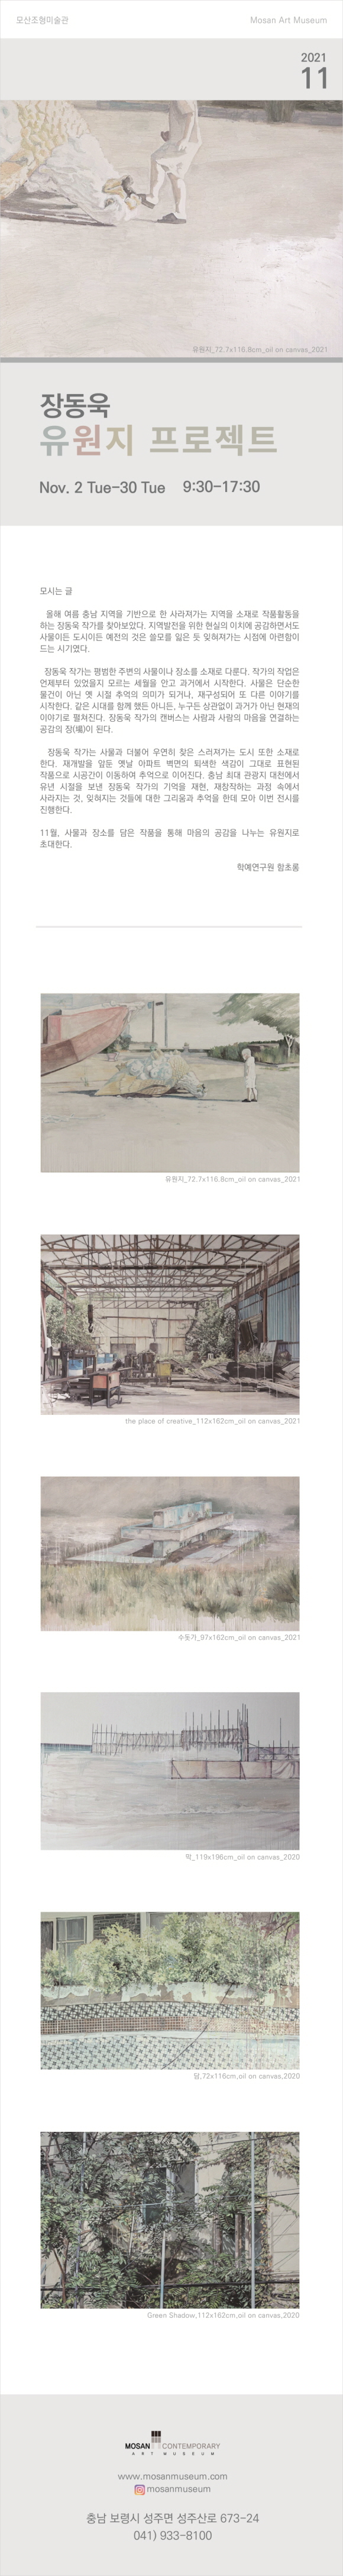 장동욱 전시회 "유원지 프로젝트"